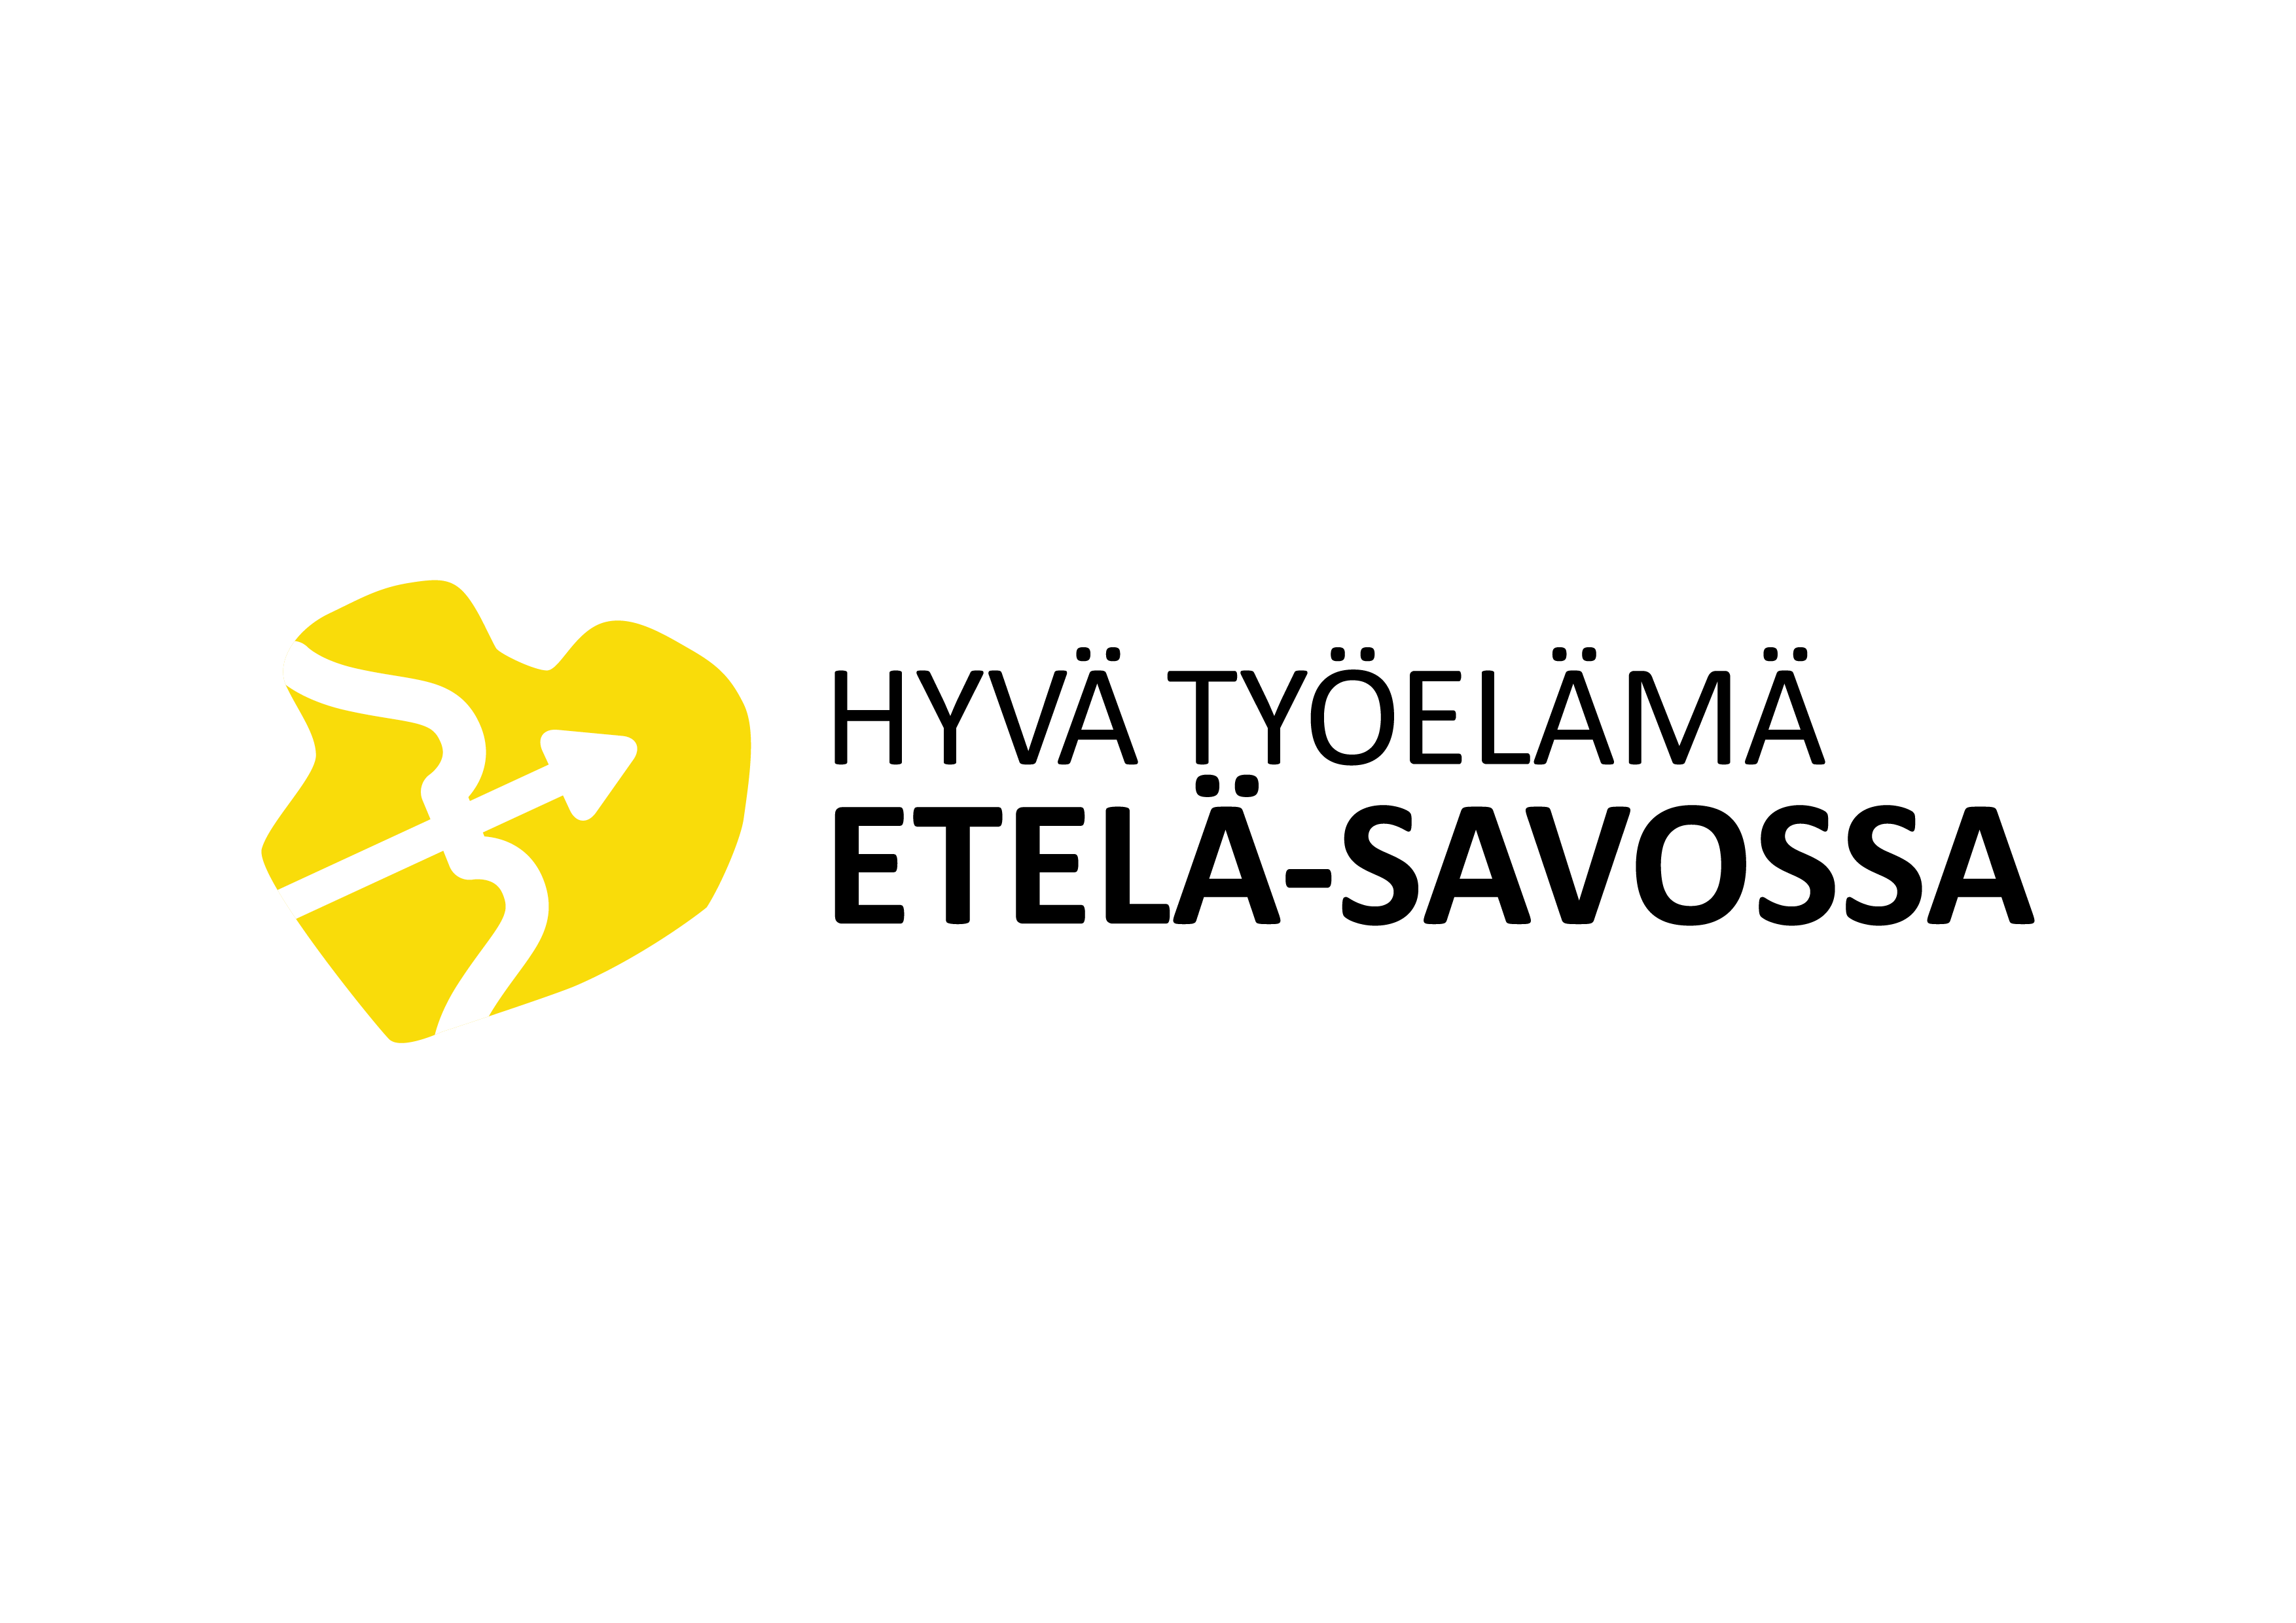 Hyvä työelämä Etelä-Savossa -verkoston logo.